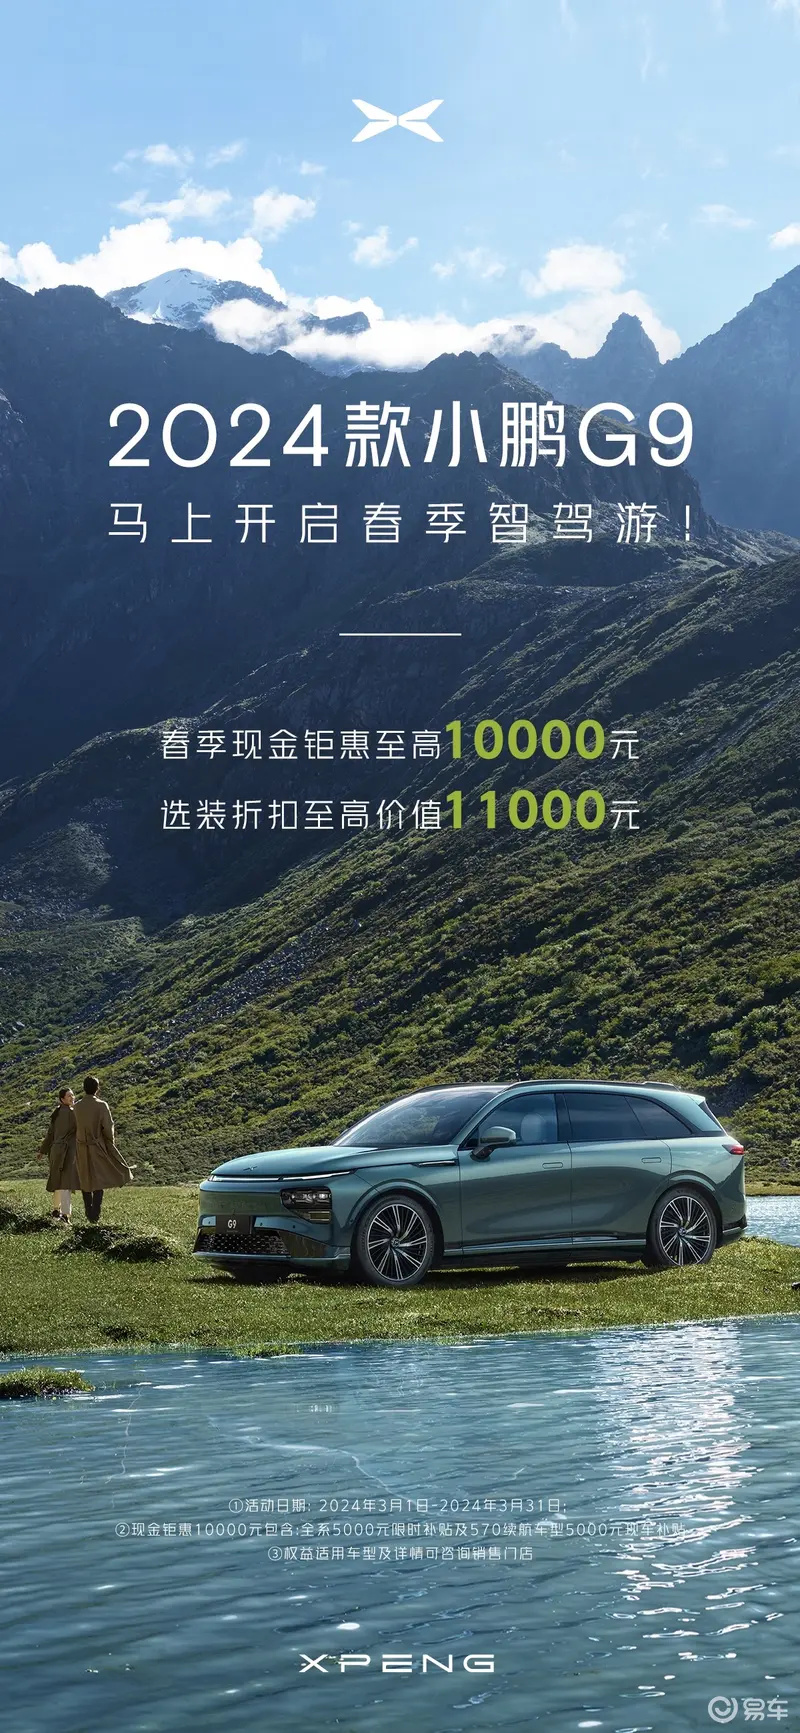 小鹏汽车推出限时福利 置换最高补1.5万元/付费外观车色5折插图2